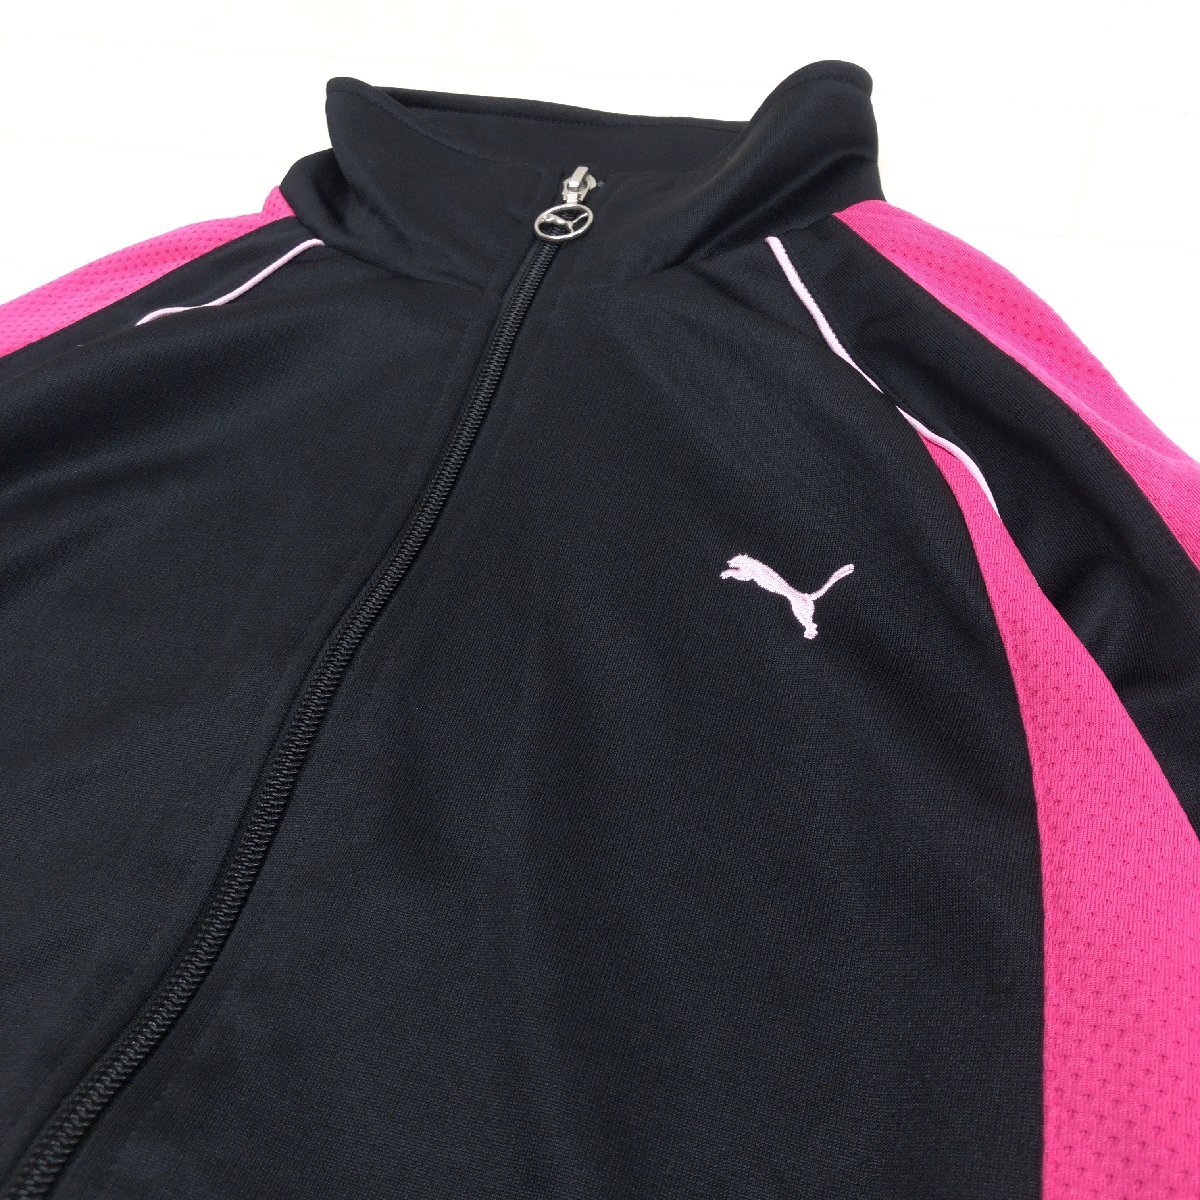 PUMA Puma Logo вышивка сетка переключатель джерси жакет L черный × розовый длинный рукав спортивная куртка внутренний стандартный товар женский спорт 